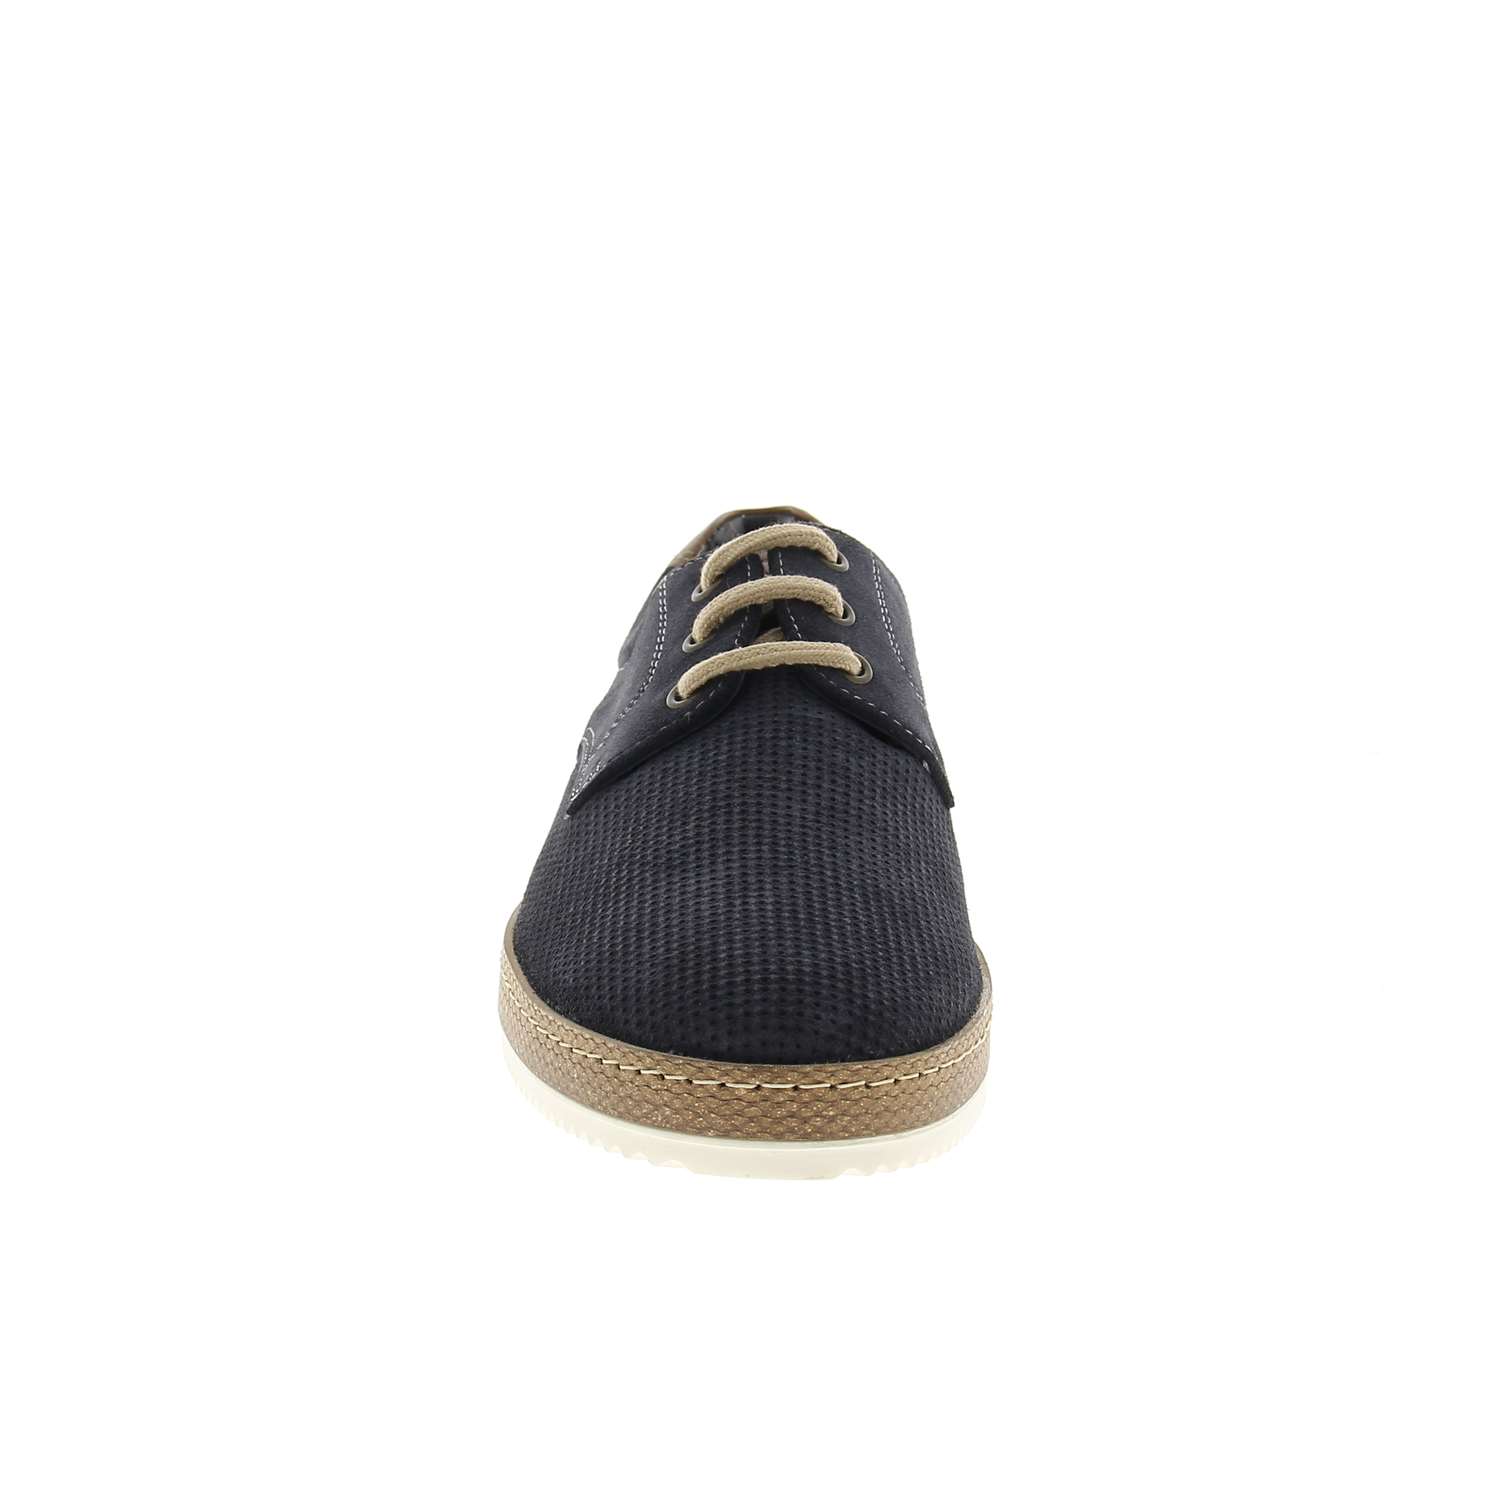 03 - ALLIA - XAPI - Chaussures à lacets - Croûte de cuir